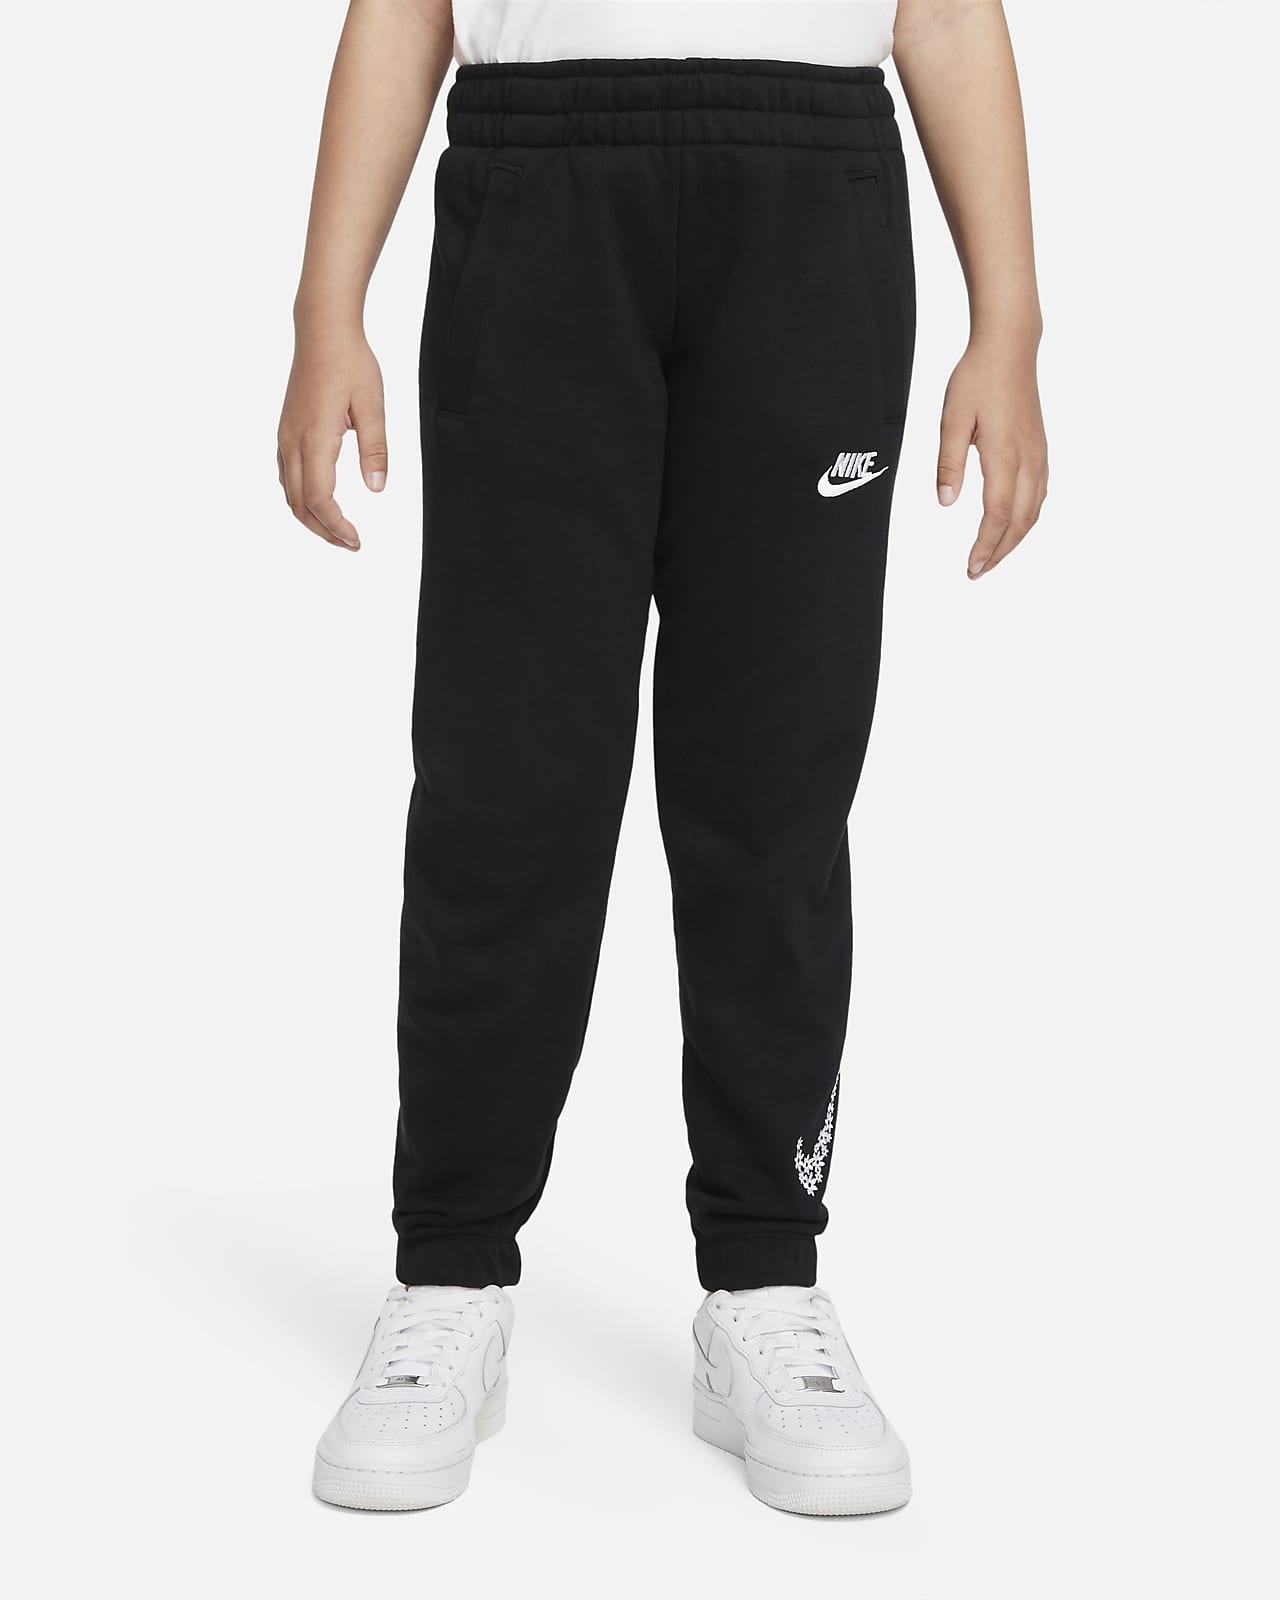 Nike Sportswear Older Kids' (Girls') French Terry Trousers